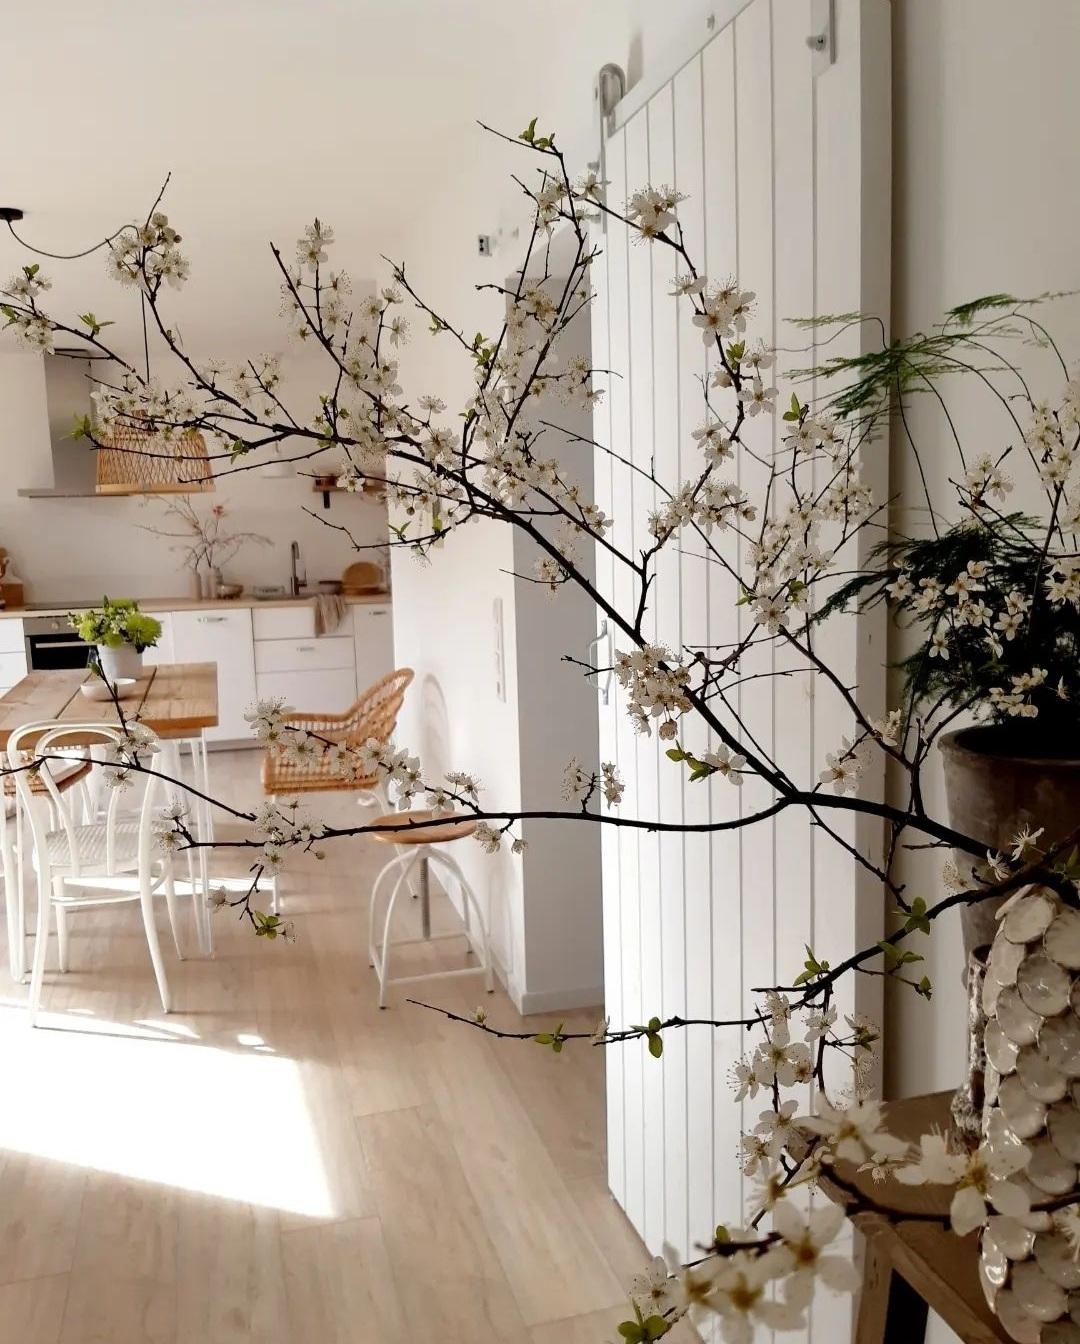 Frühlingsboten
#Zweige #blumen #blumendeko #küche #essbereich #interior #couchstyle #schiebetür #weisswohnen